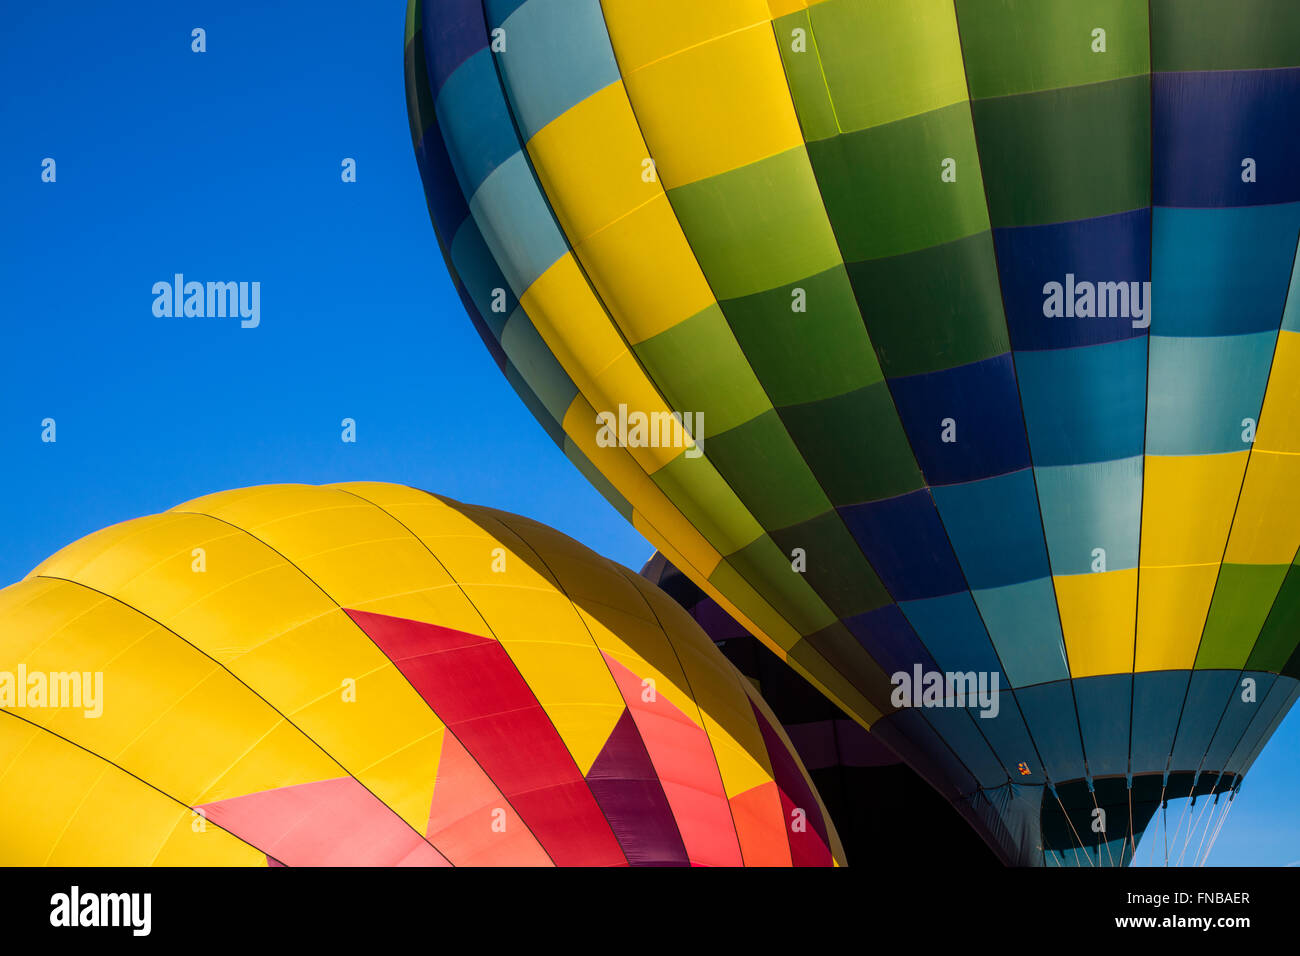 Immagine astratta di due i palloni ad aria calda contro un profondo cielo blu Foto Stock